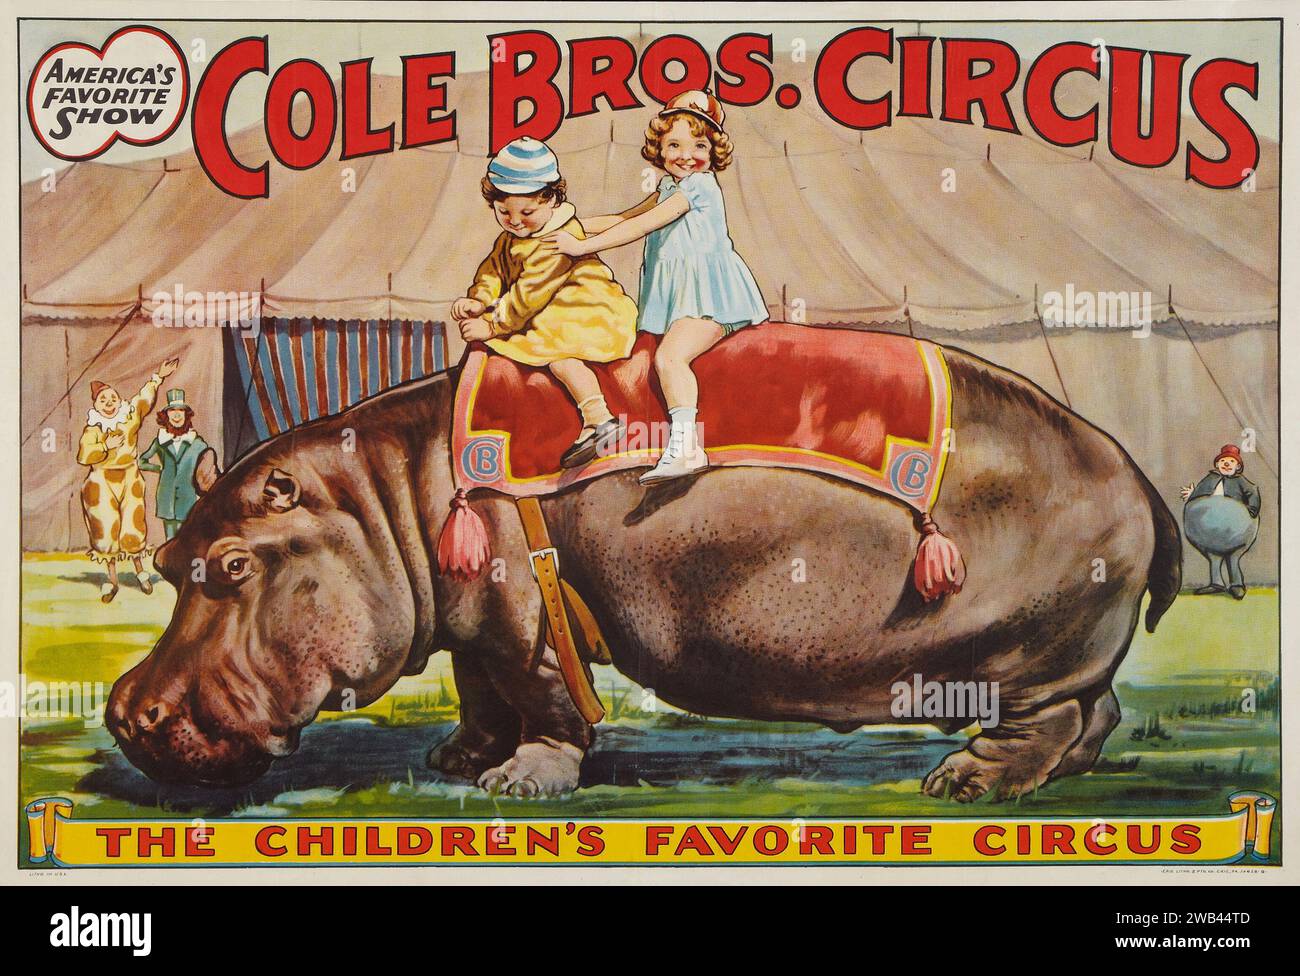 Affiche de cirque (Cole Brothers, années 1930) mettant en vedette des enfants sur le dos d'un hippopotame. Banque D'Images